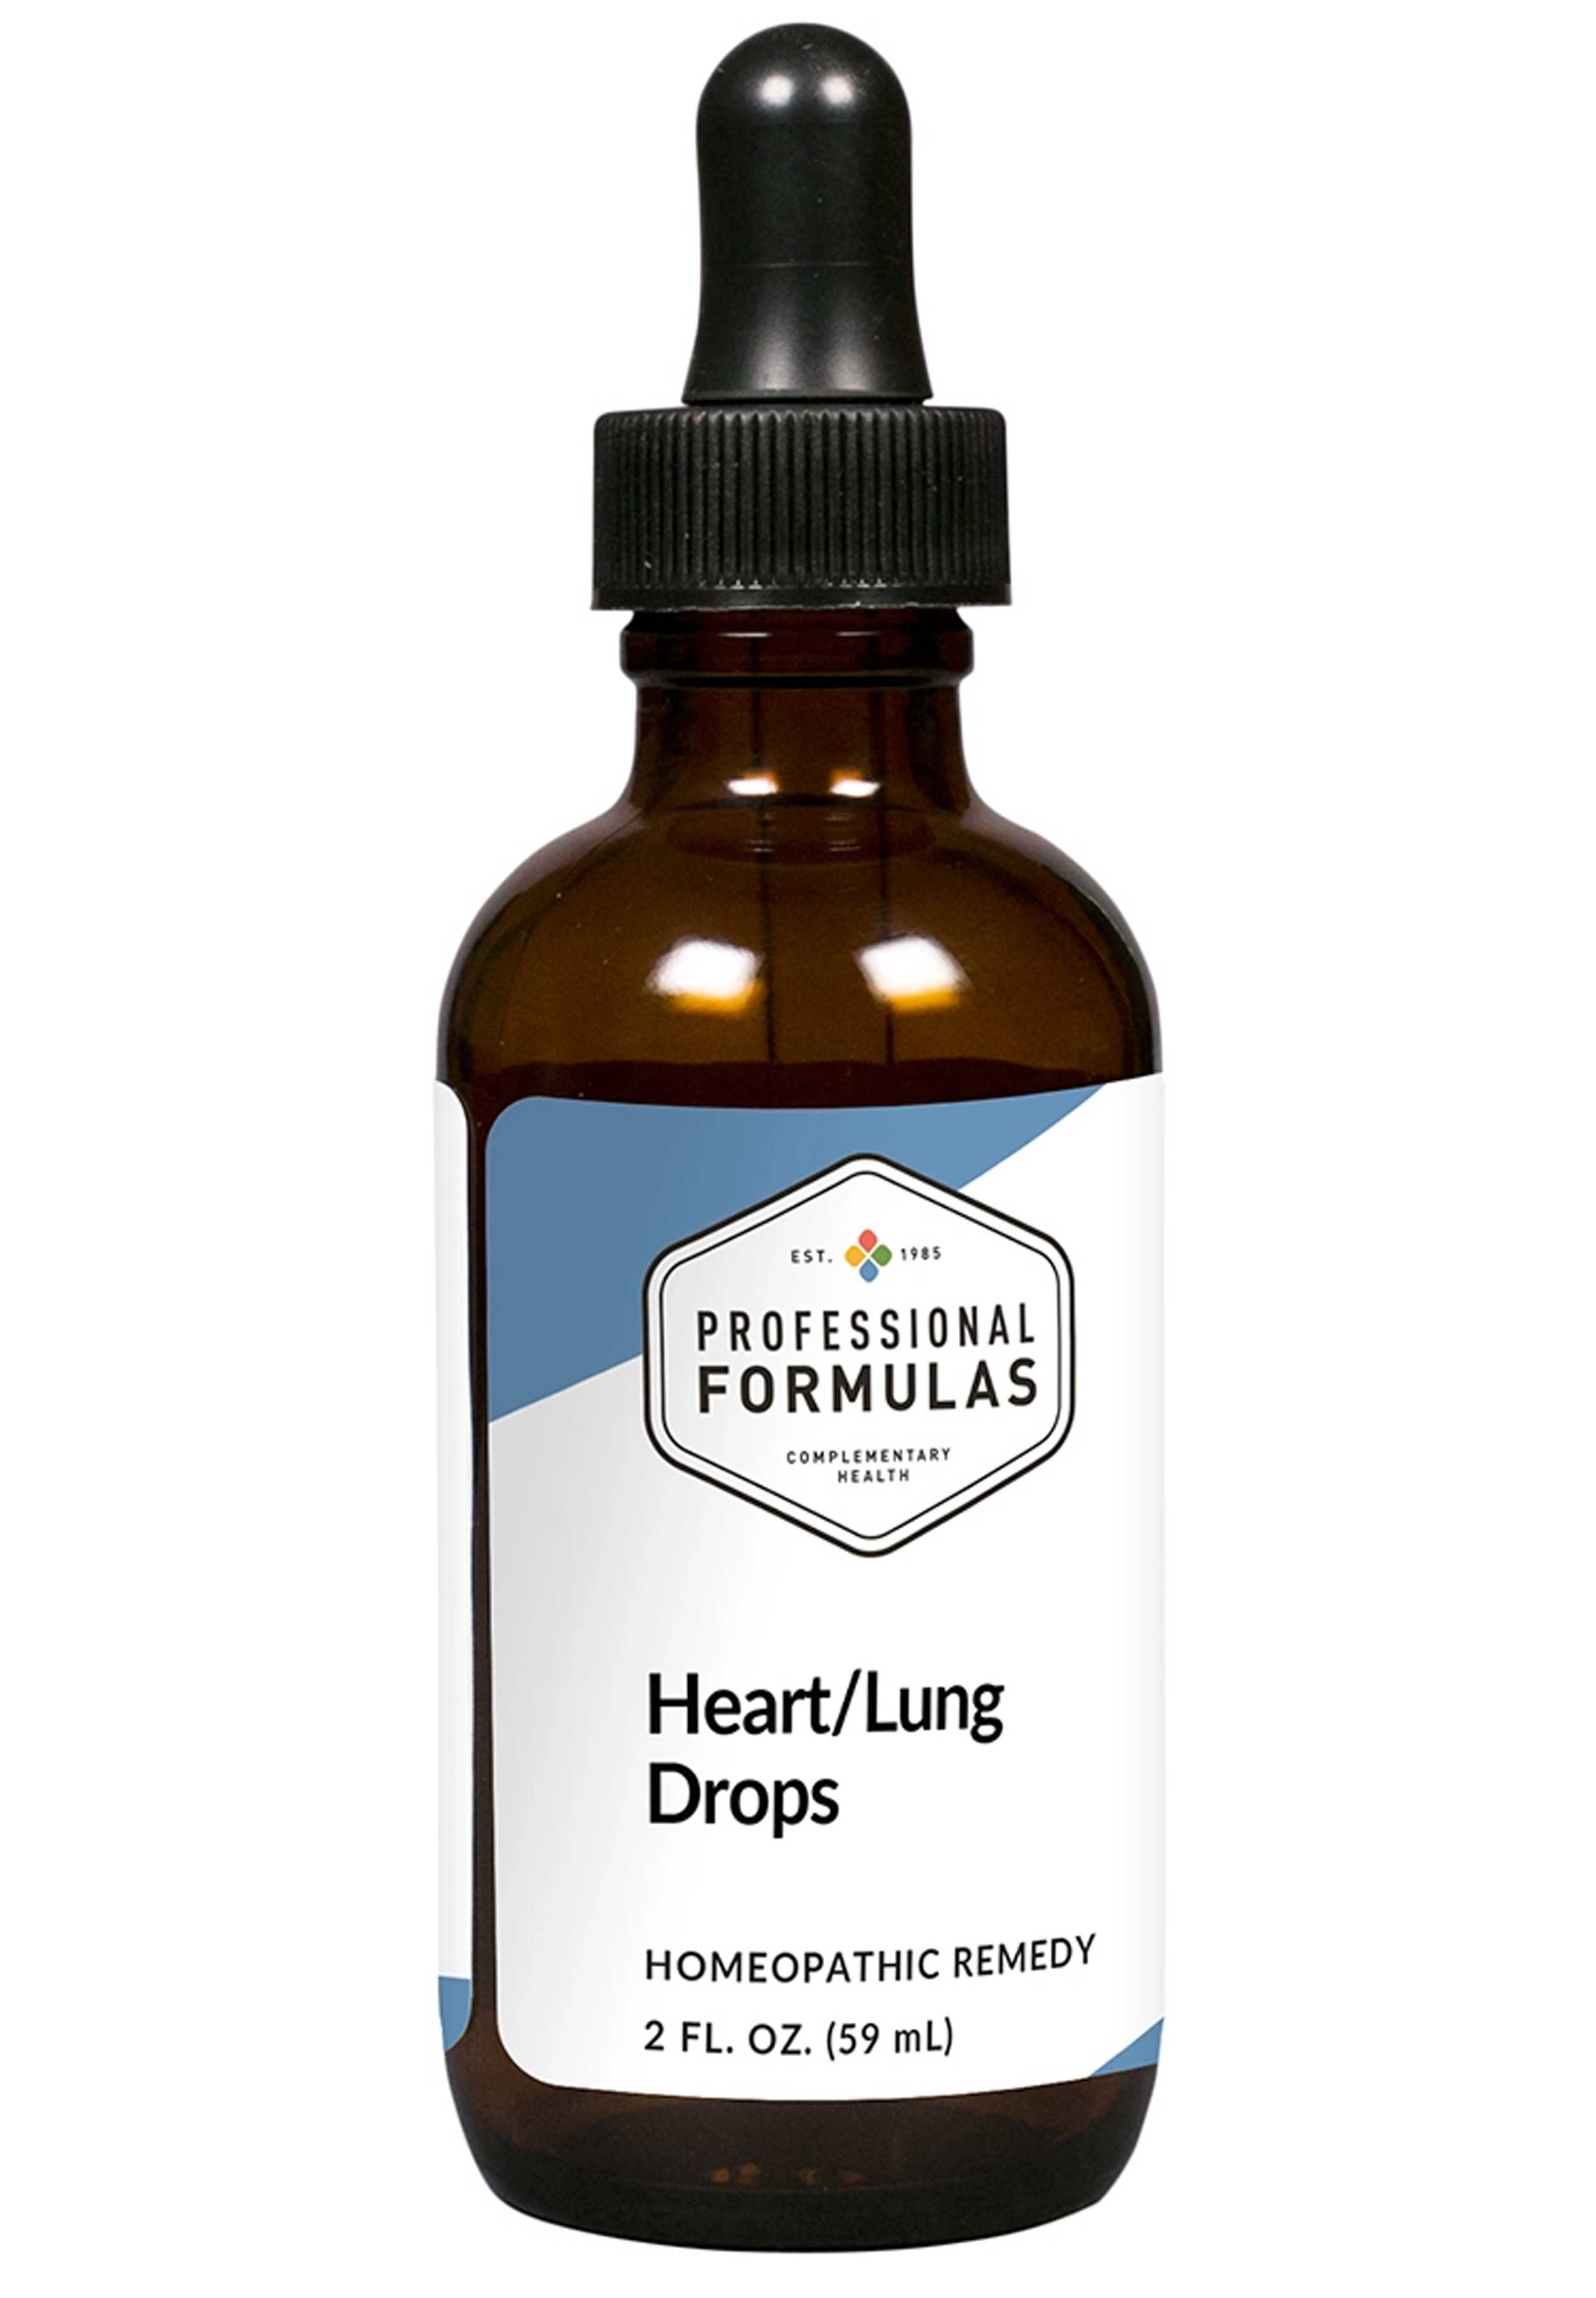 Professional Formulas Heart/Lung Drops